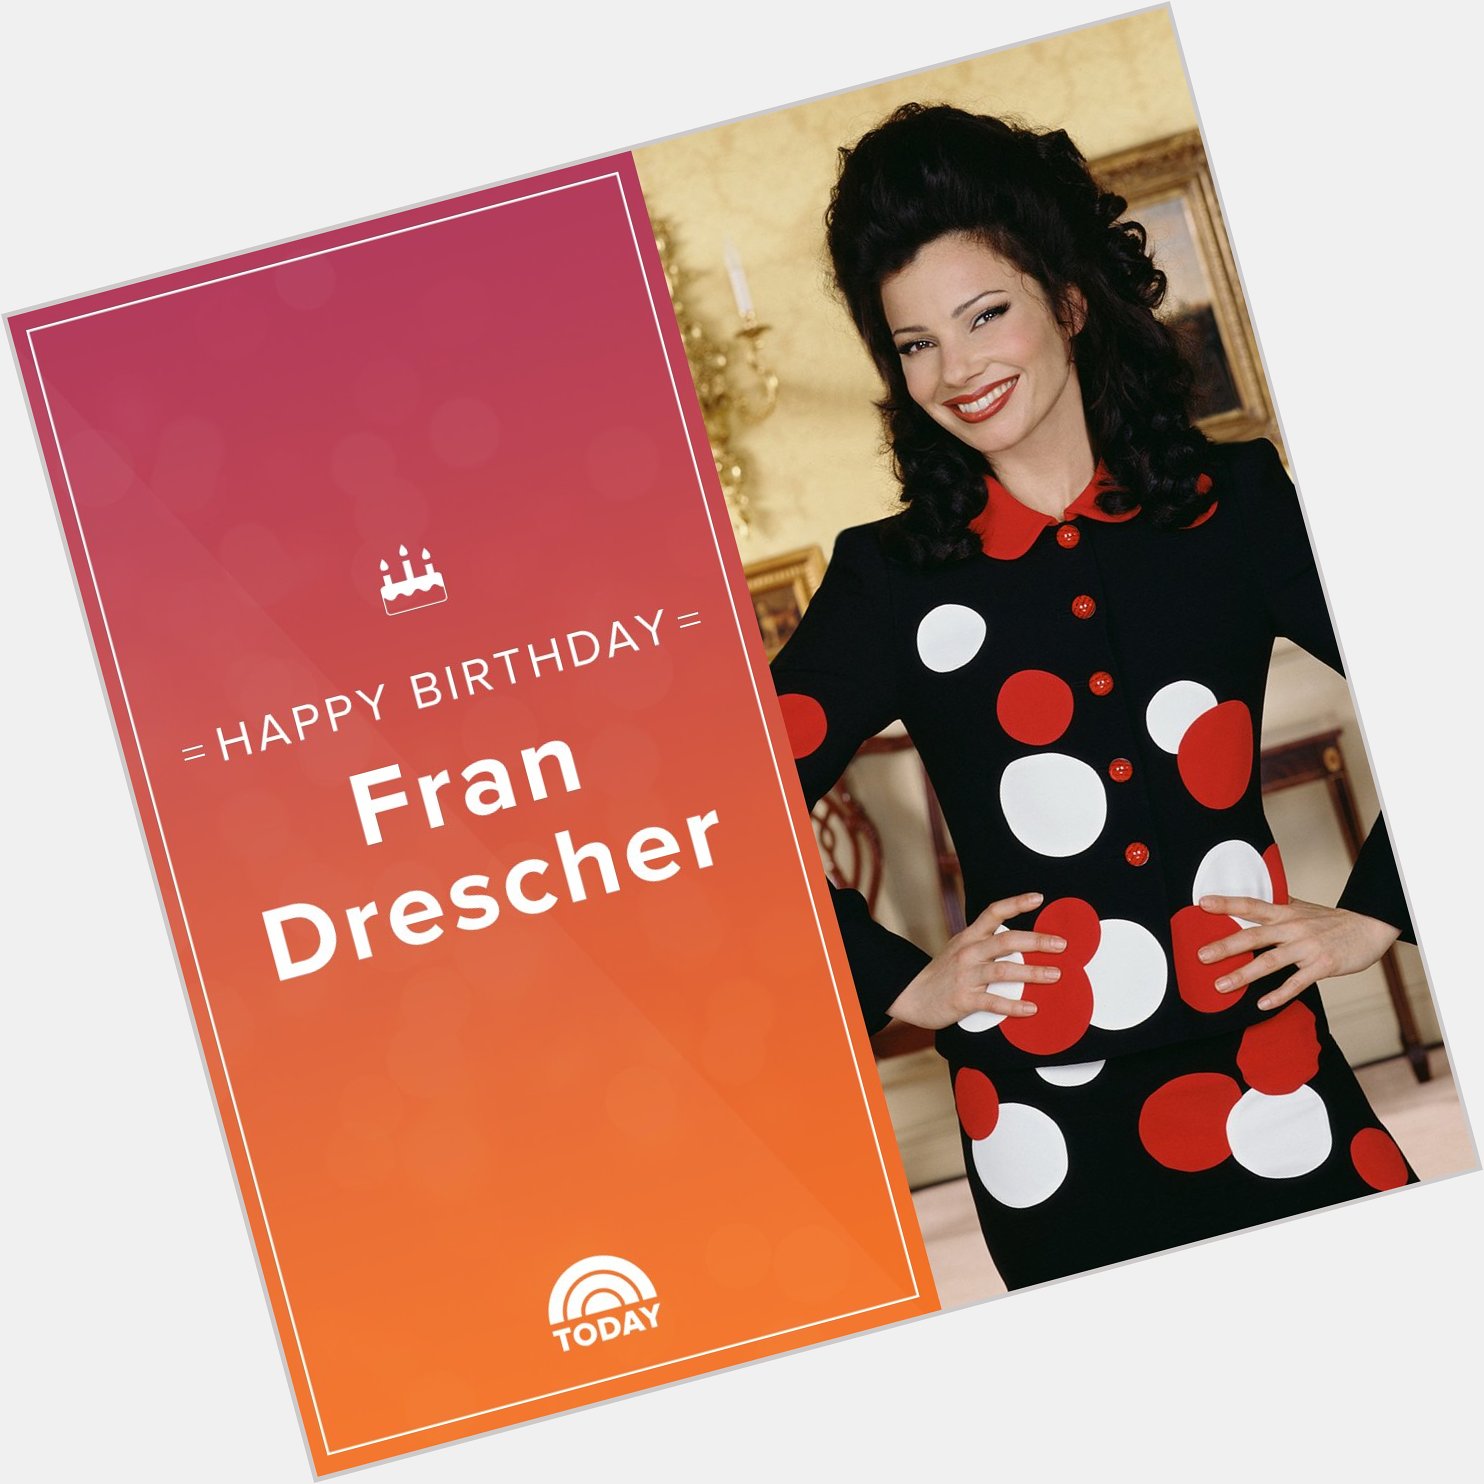 Happy birthday, Fran Drescher! 